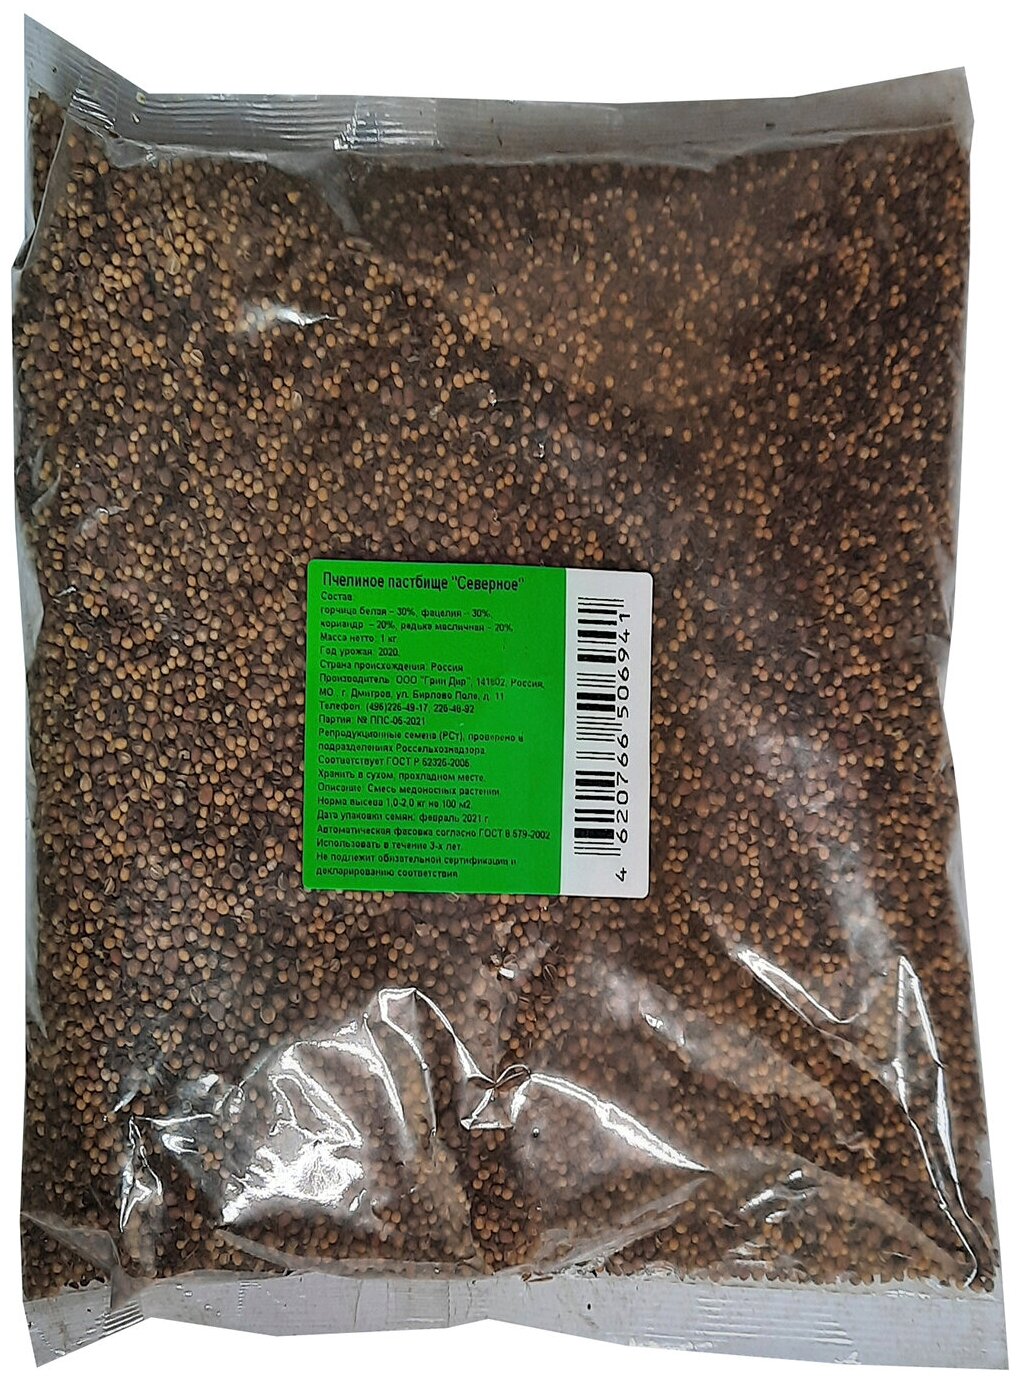 Семена Green Deer пчелиное пастбище северное 0.5 кг 4620766506927